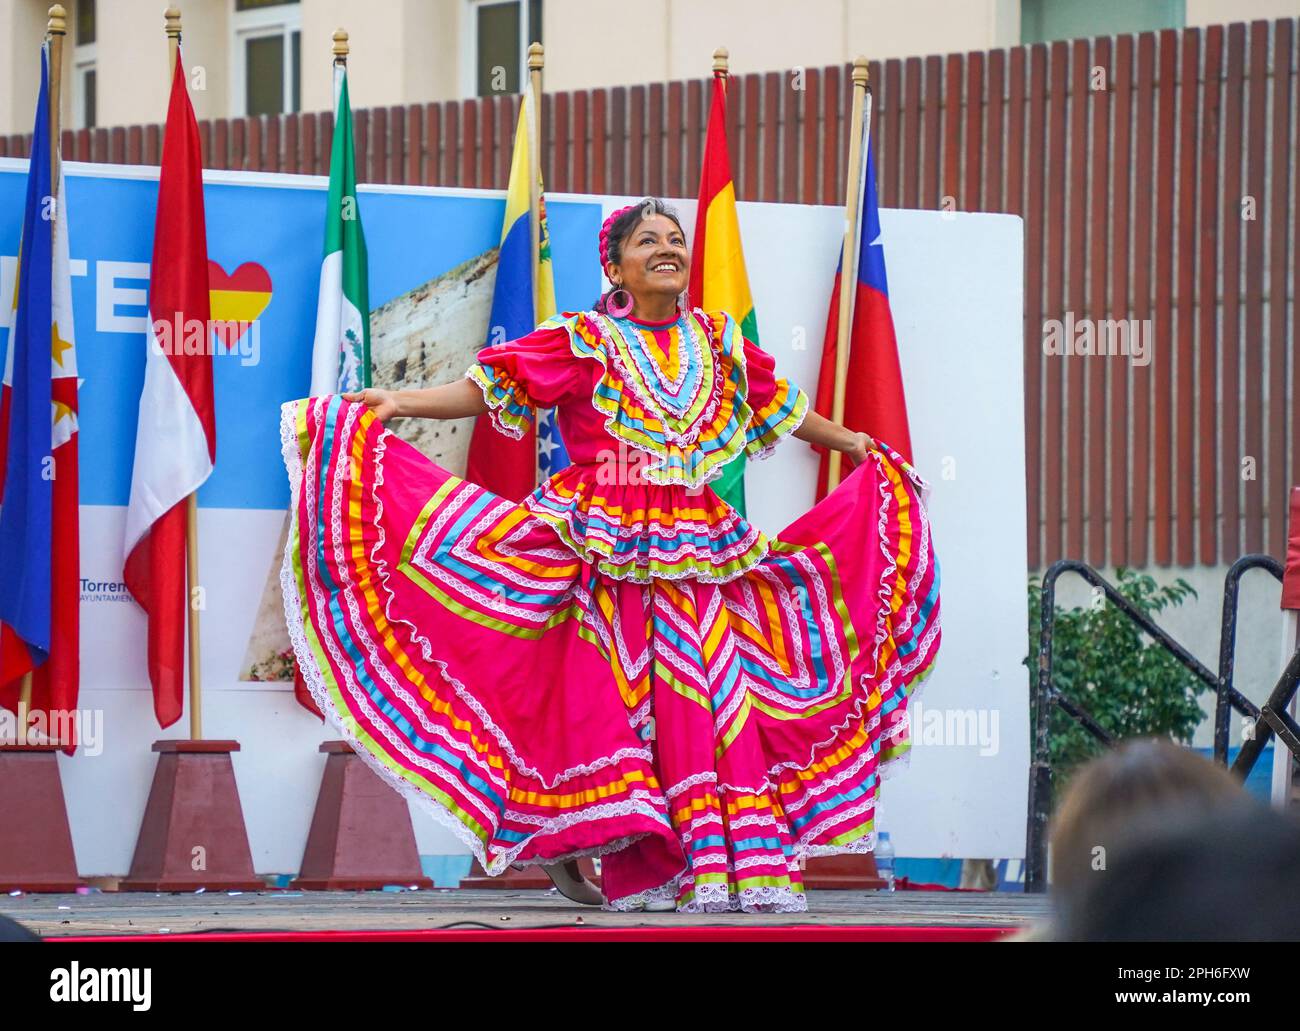 Torremolinos. Frau, die traditionellen südamerikanischen Tanz aufführt, Torremolinos, Dia del Residente, multikulturelle Veranstaltung, Costa del Sol, Spanien. Stockfoto